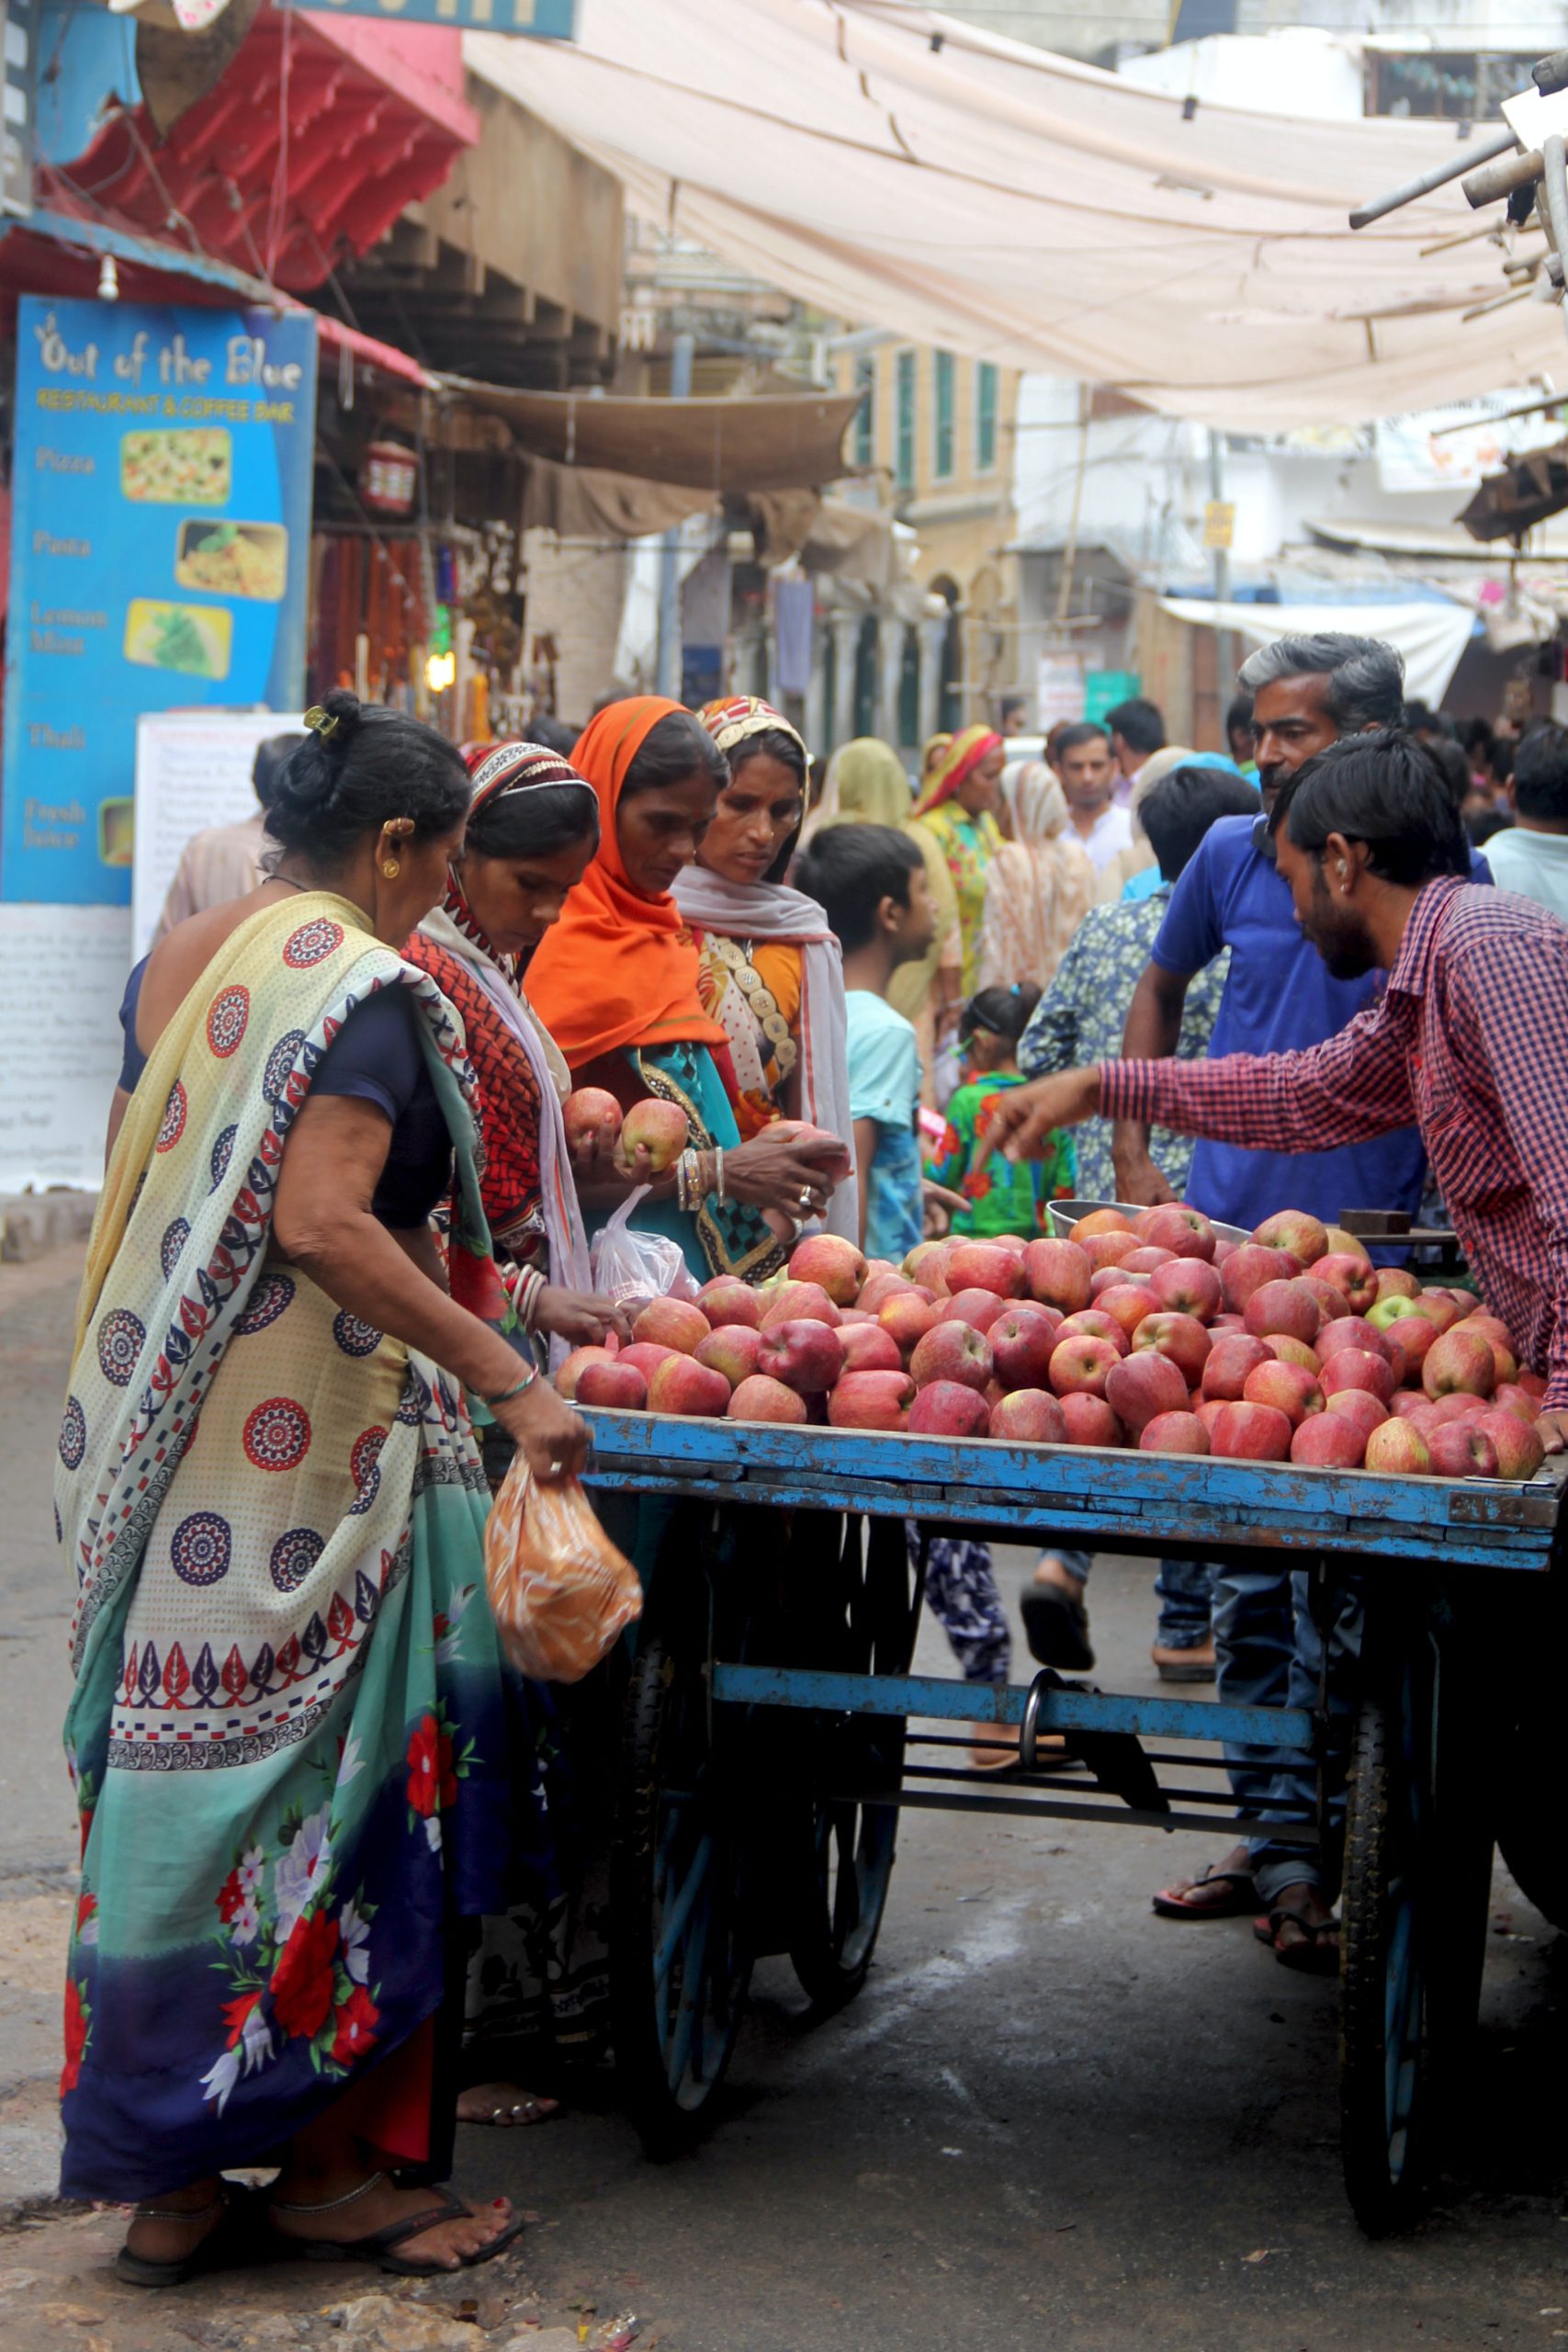 Women shopping at Pushkar main market, looking at a cart of apples.